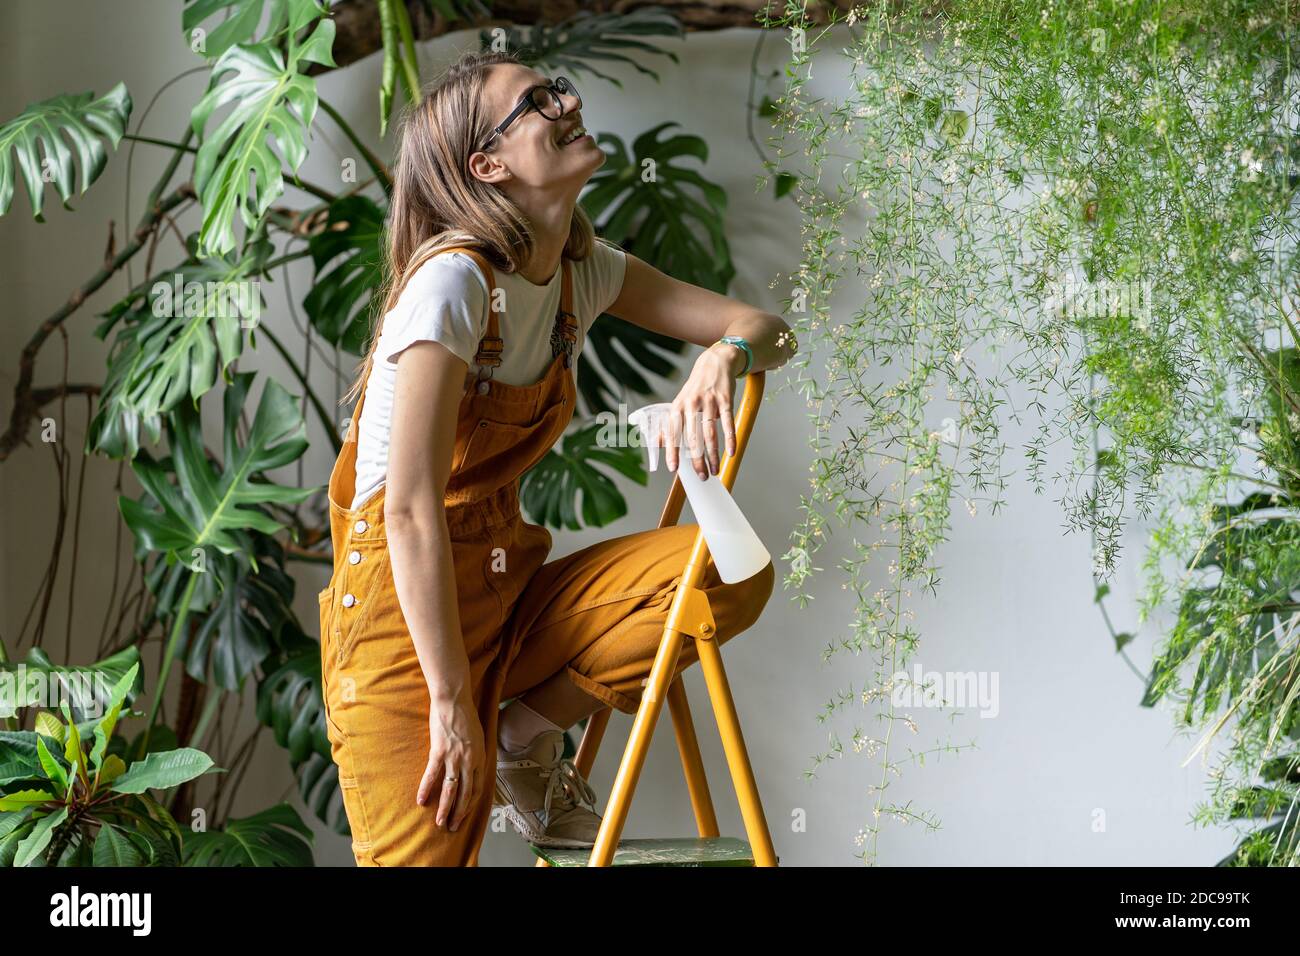 Felice donna giardiniere che tiene pulverizer spray, sorridente, prende una pausa dal lavoro, seduta sulla scala, indossando occhiali e tute arancioni. Verde Foto Stock